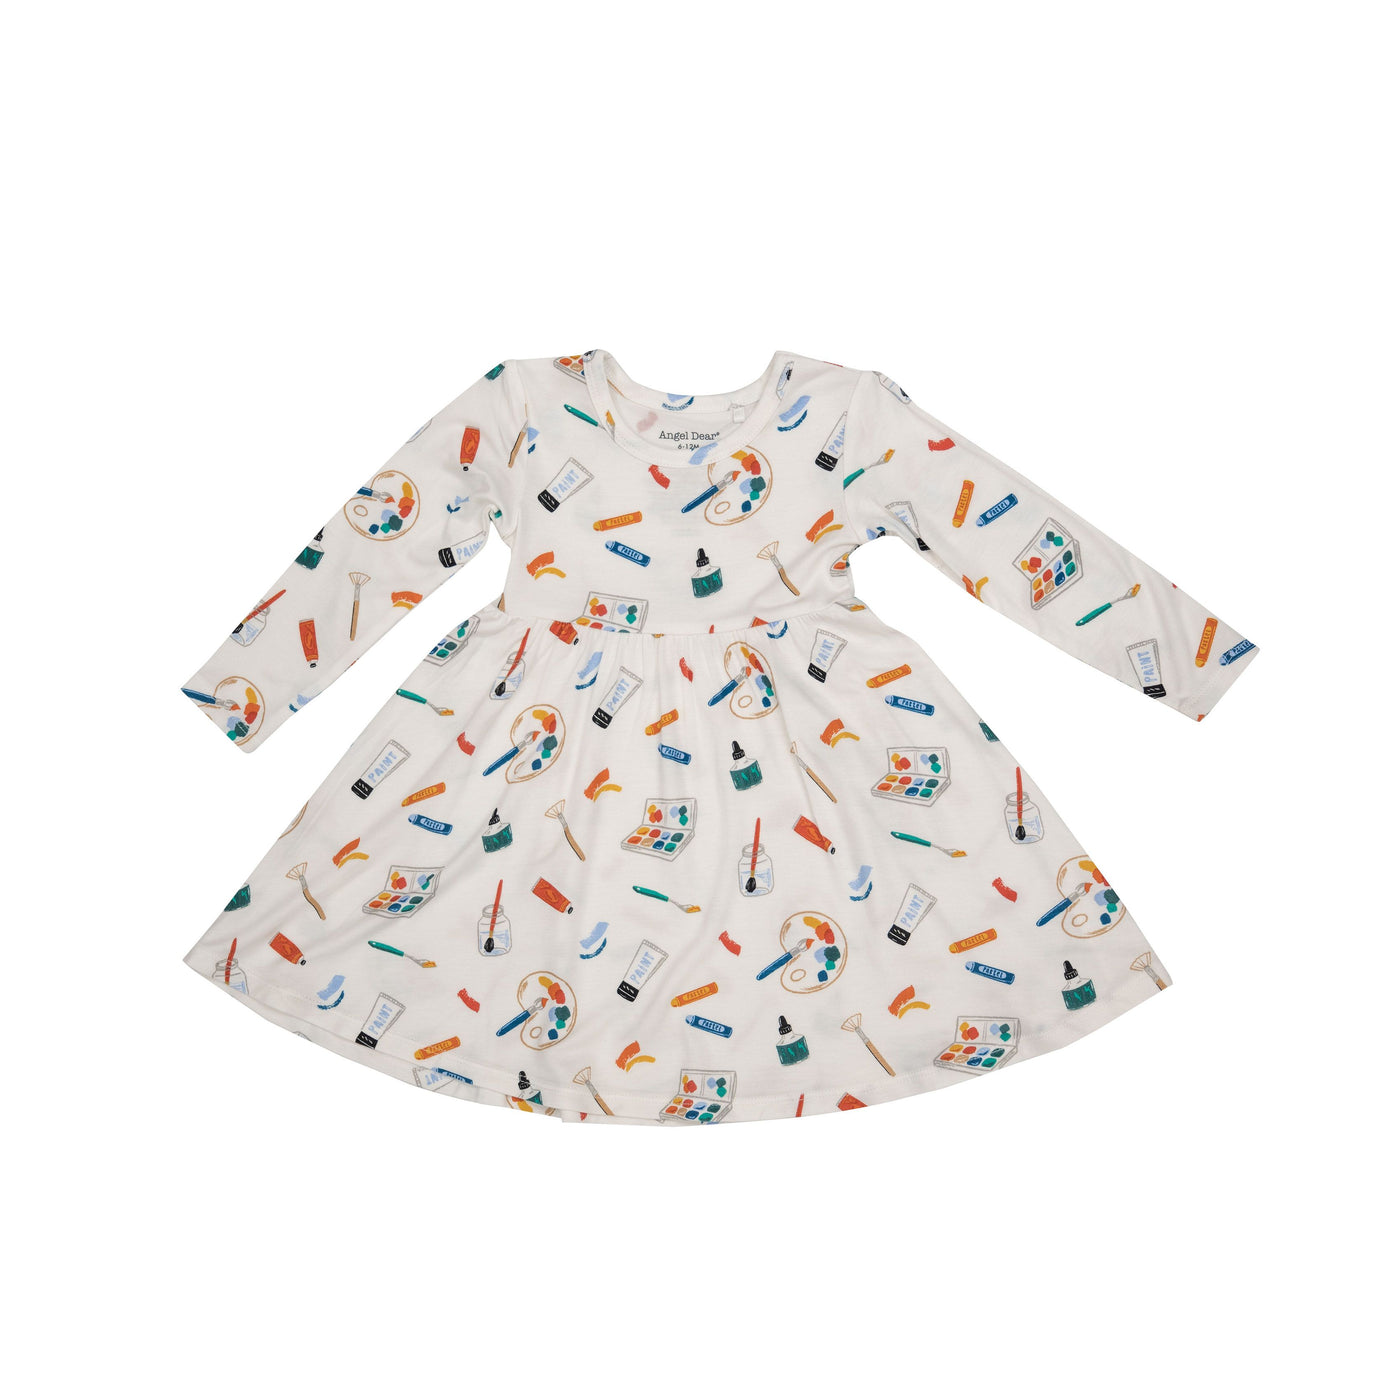 Art Supplies Twirly Dress - Breckenridge Baby